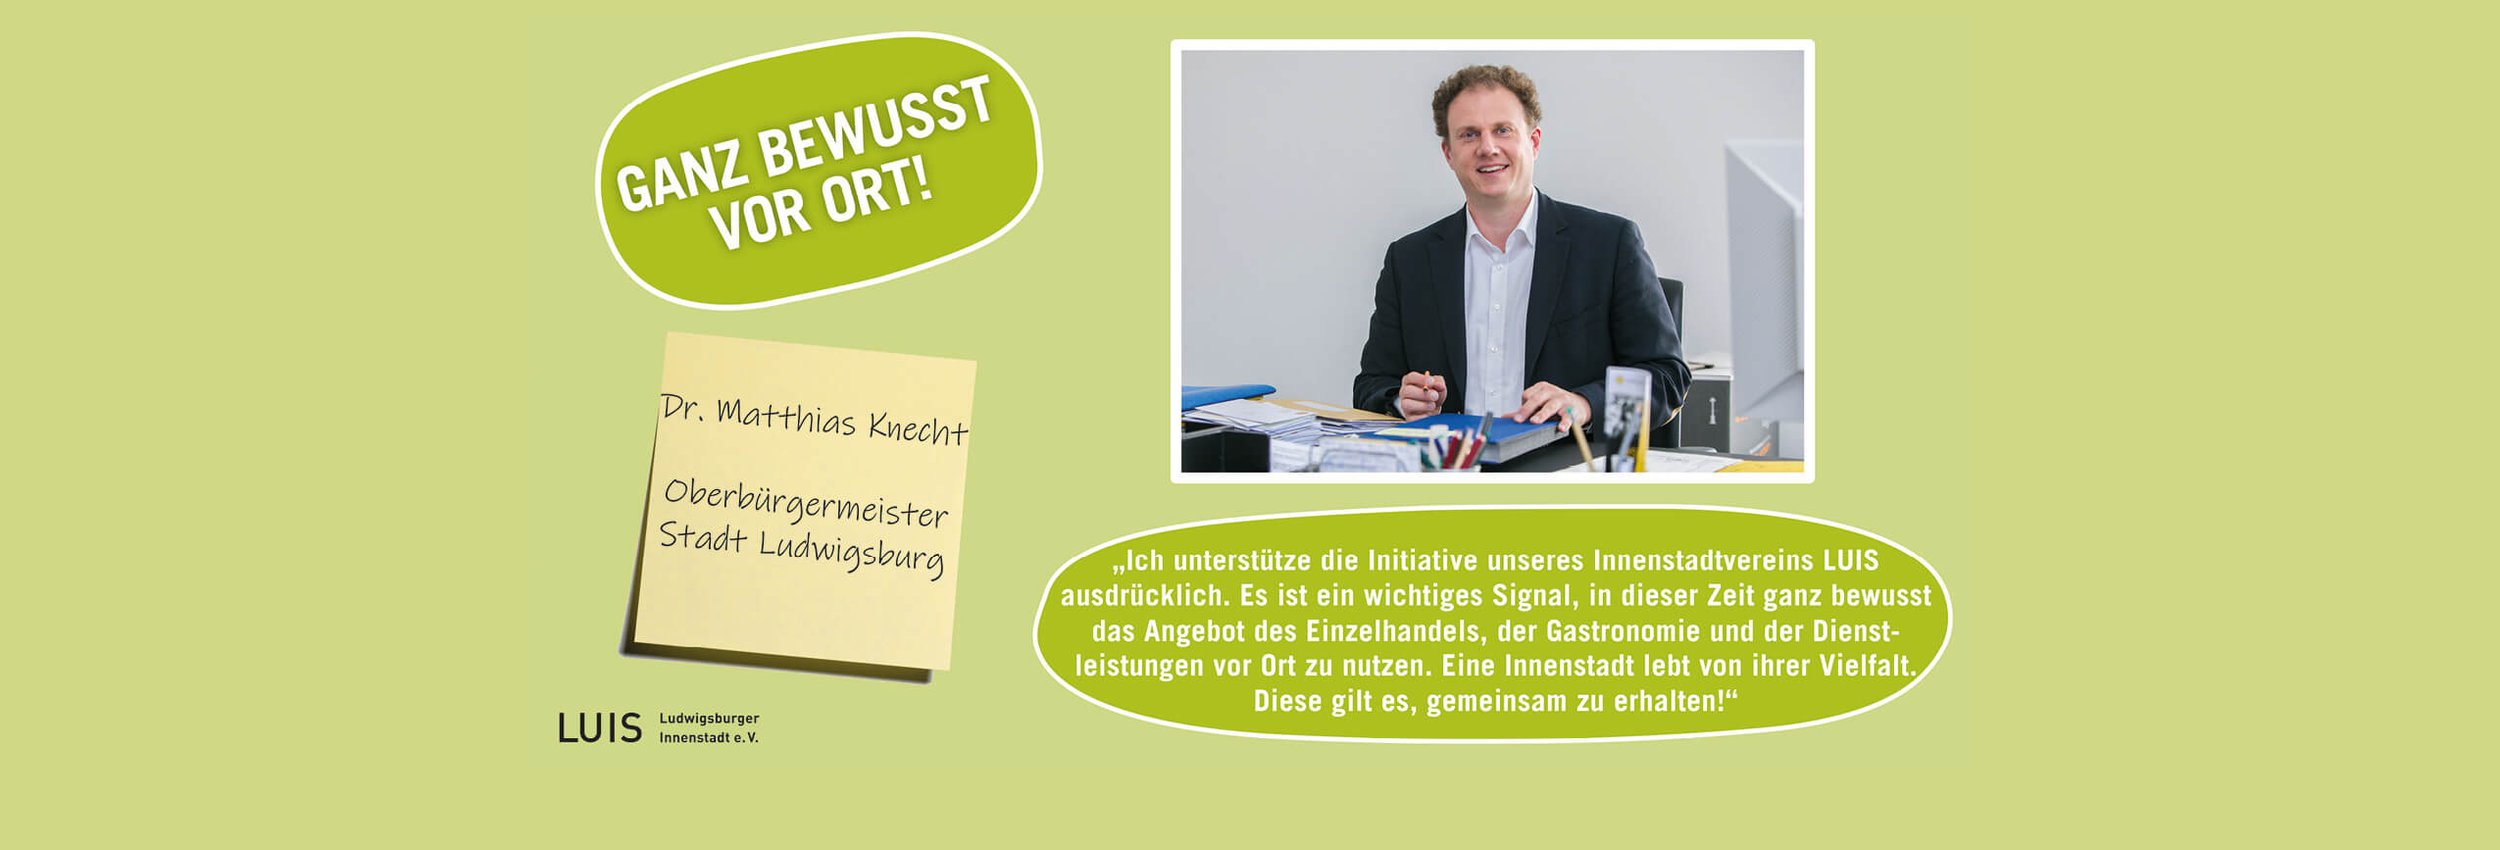 OB Dr. Matthias Knecht und die Fraktionen des Ludwigsburger Gemeinderates unterstützen die Innenstadt-Kampagne